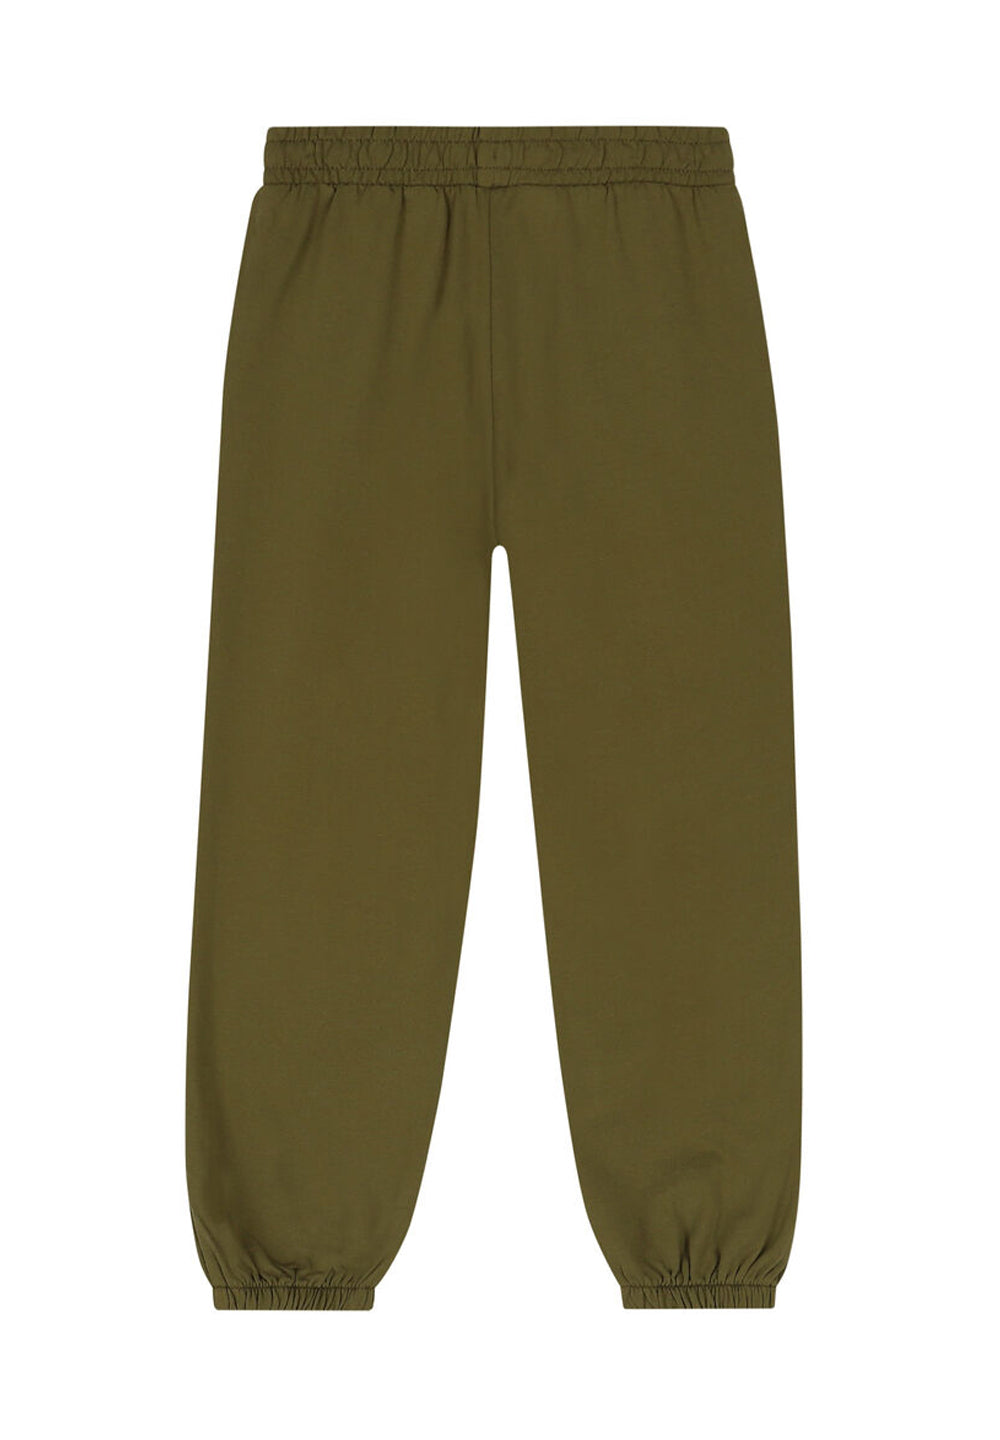 Green fleece trousers for boy